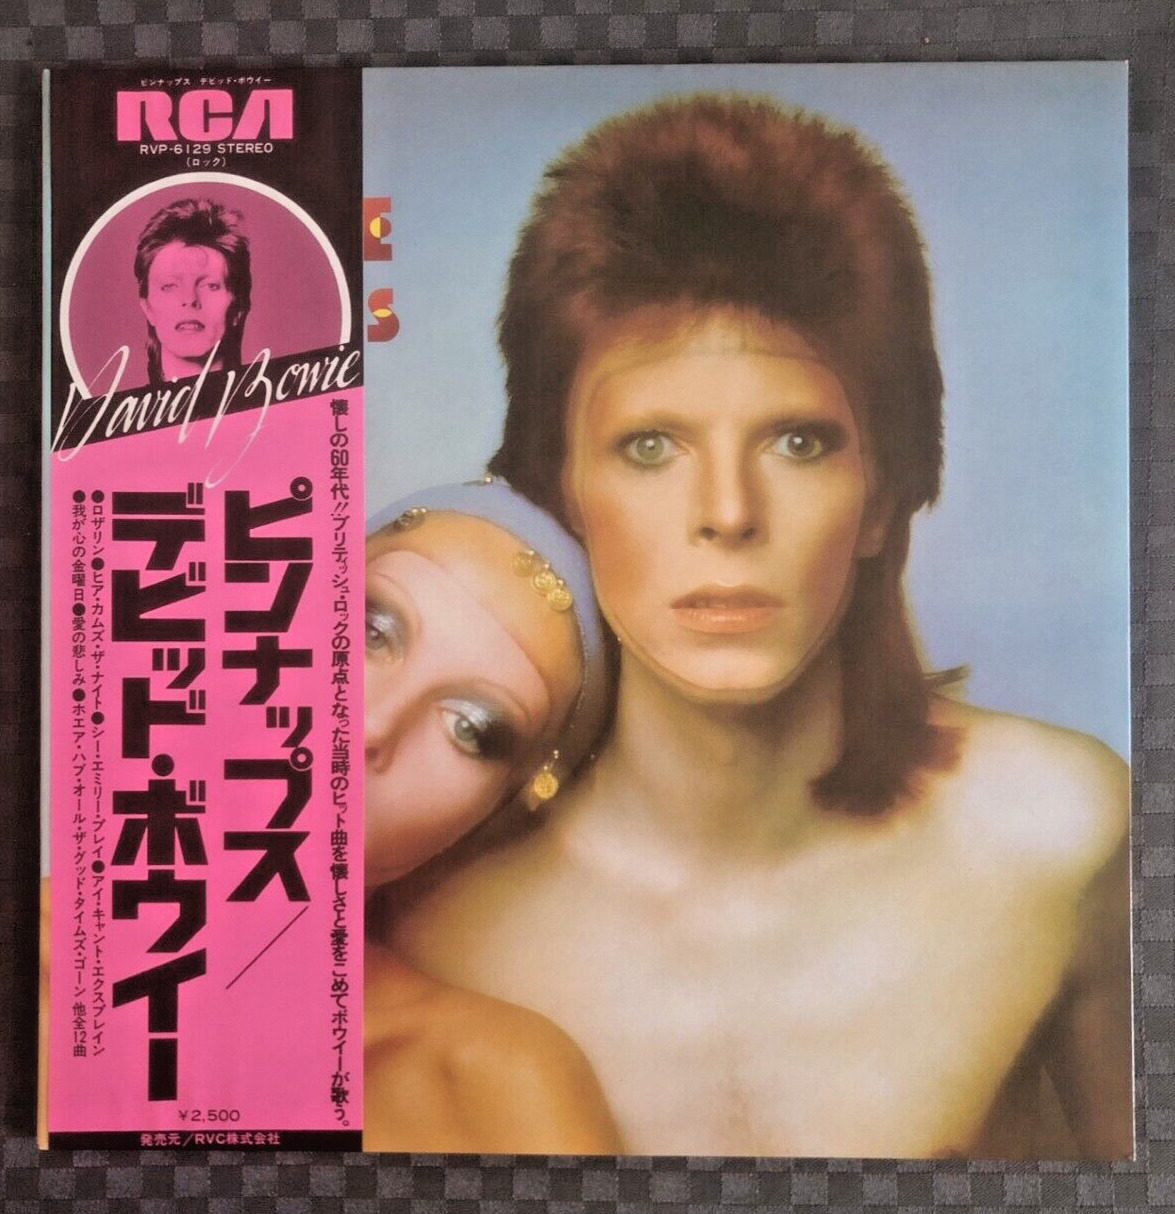 DAVID BOWIE Pin-Ups LP JAPAN 1976 W/OBI Strip RVP-6129 RCA Records